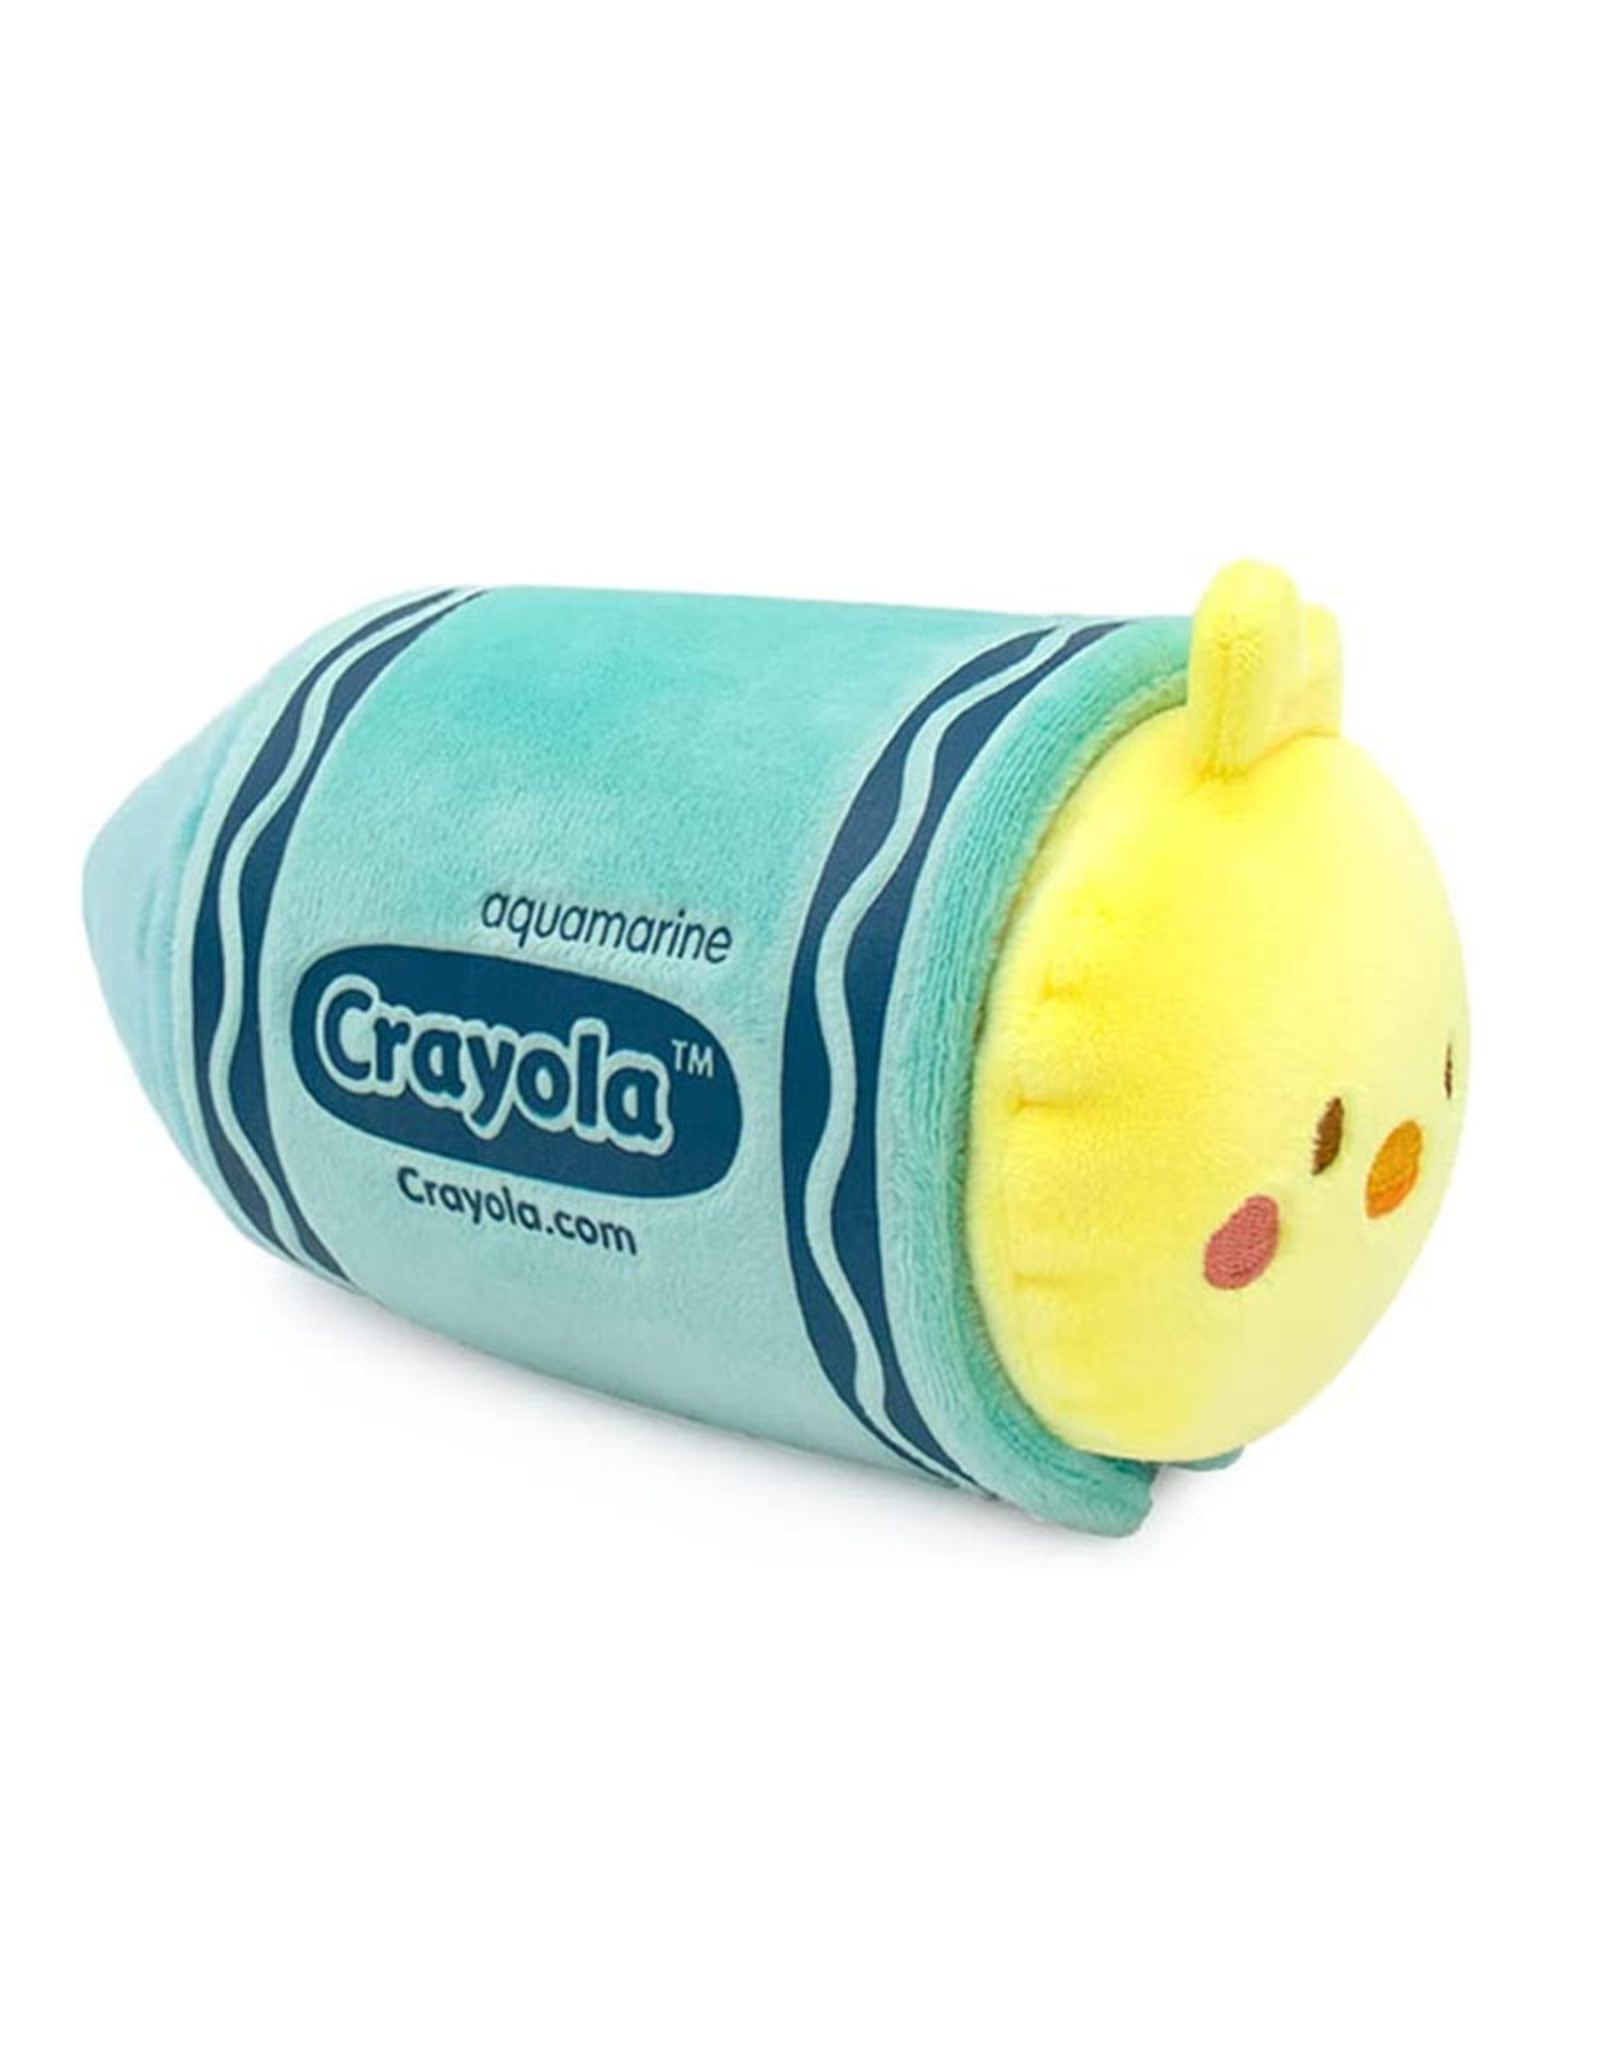 Coosy Anirollz: Crayola Chickiroll Plush